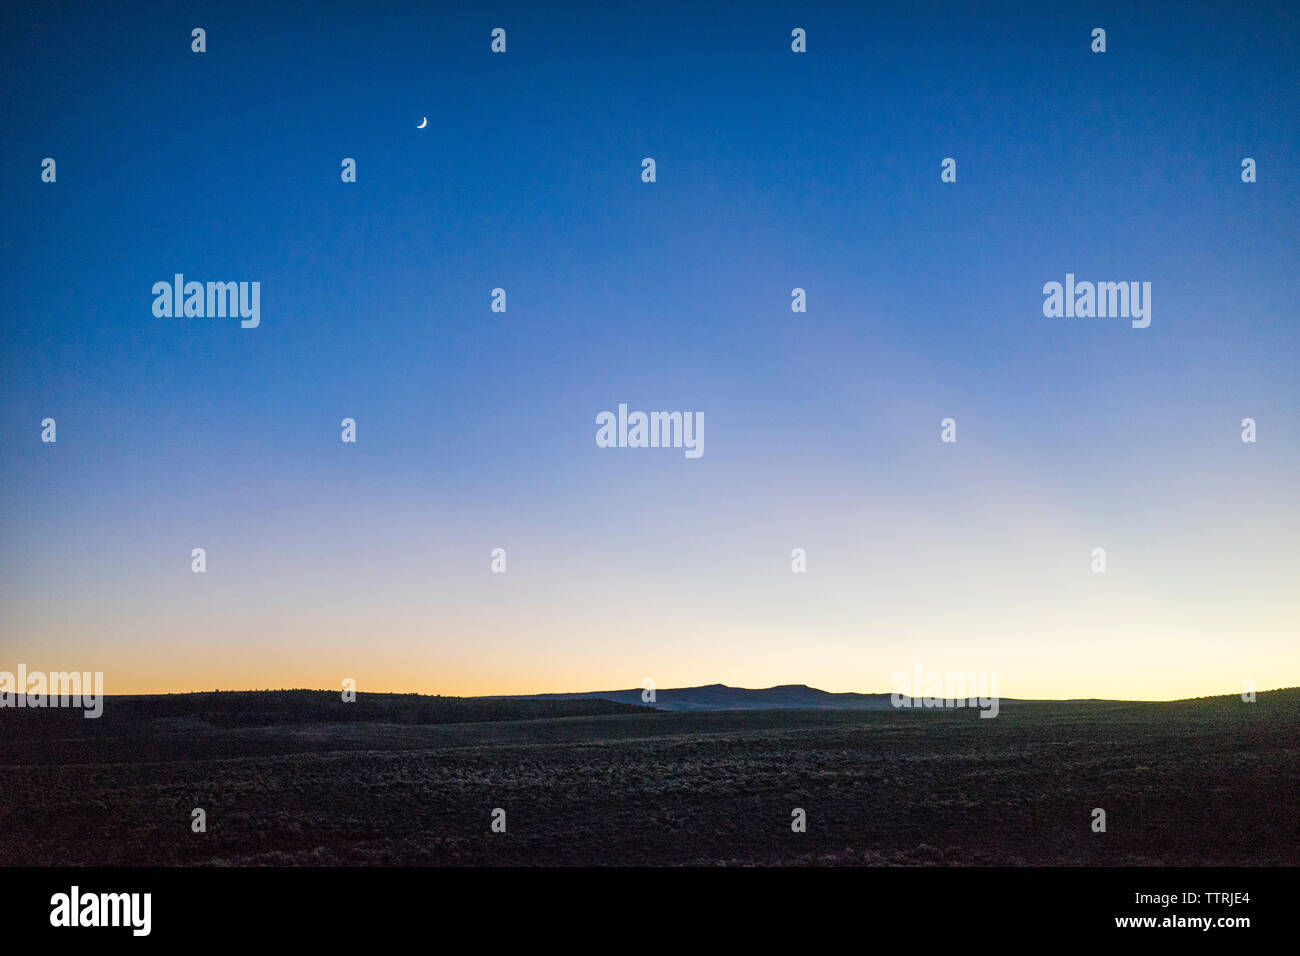 Vue panoramique du paysage sur fond de ciel bleu au coucher du soleil Banque D'Images